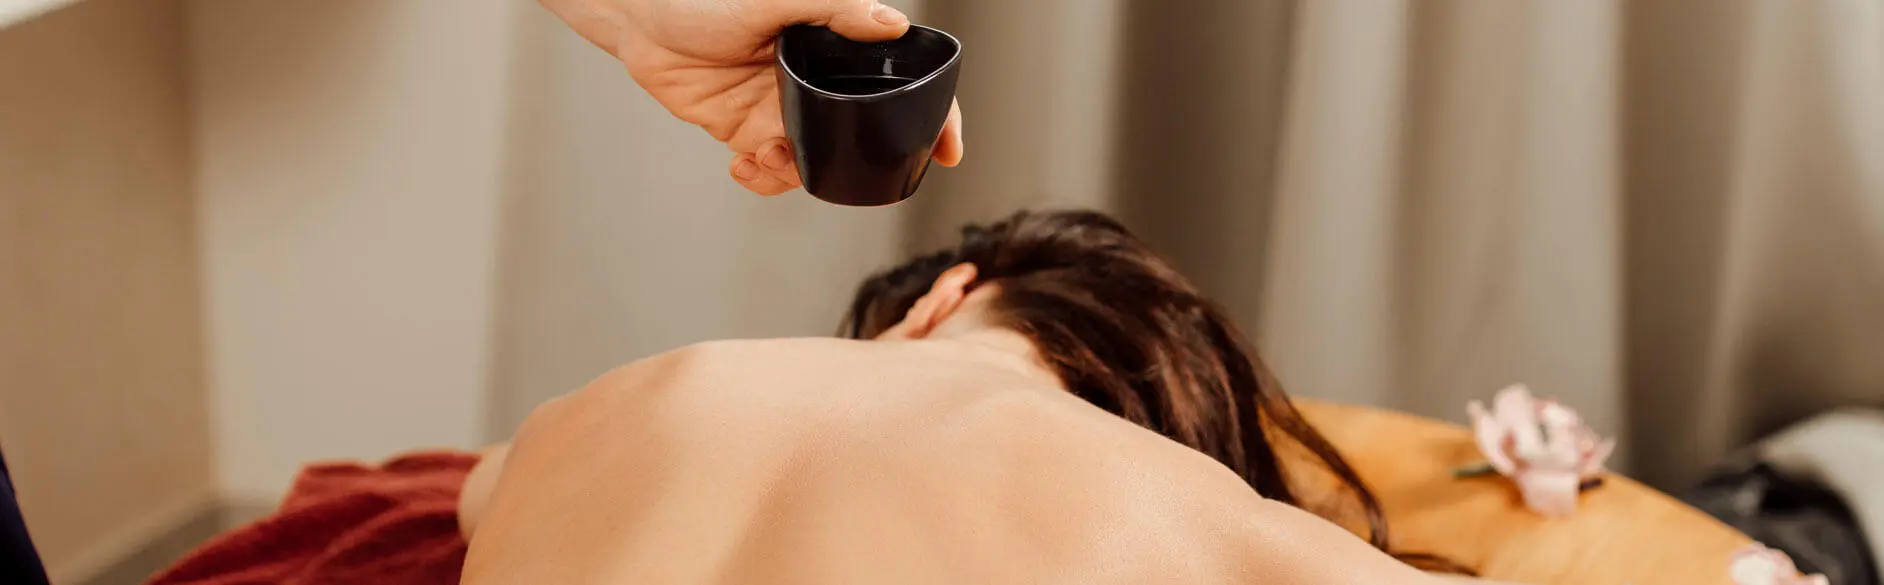 Ayurvedische Massage: Ablauf